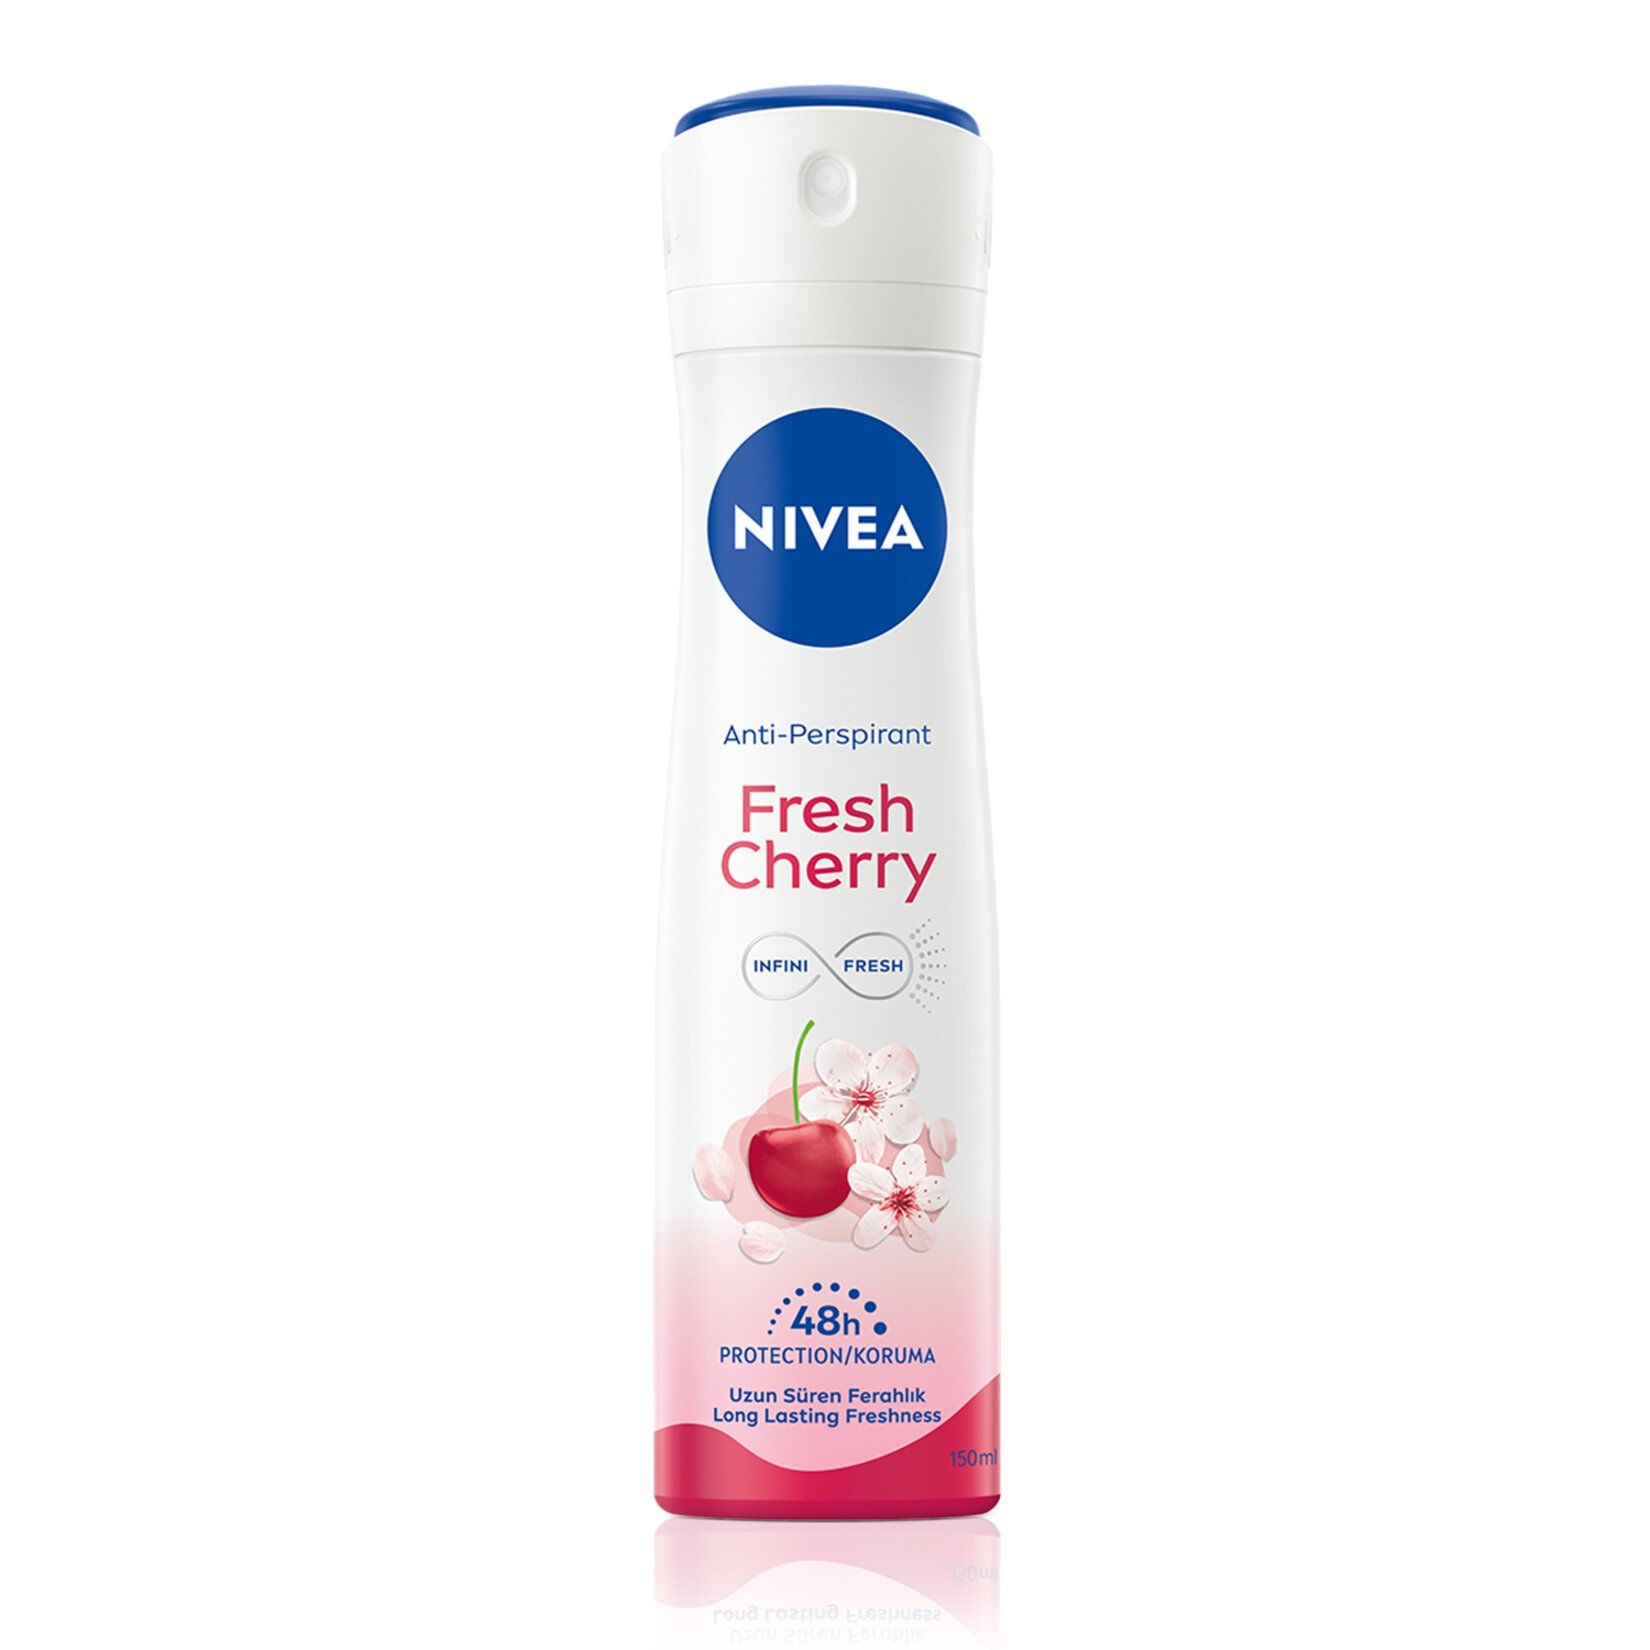 Nivea Kadın Sprey Deodorant Fresh Cherry 150 ml 48 Saat Anti-perspirant Koruması